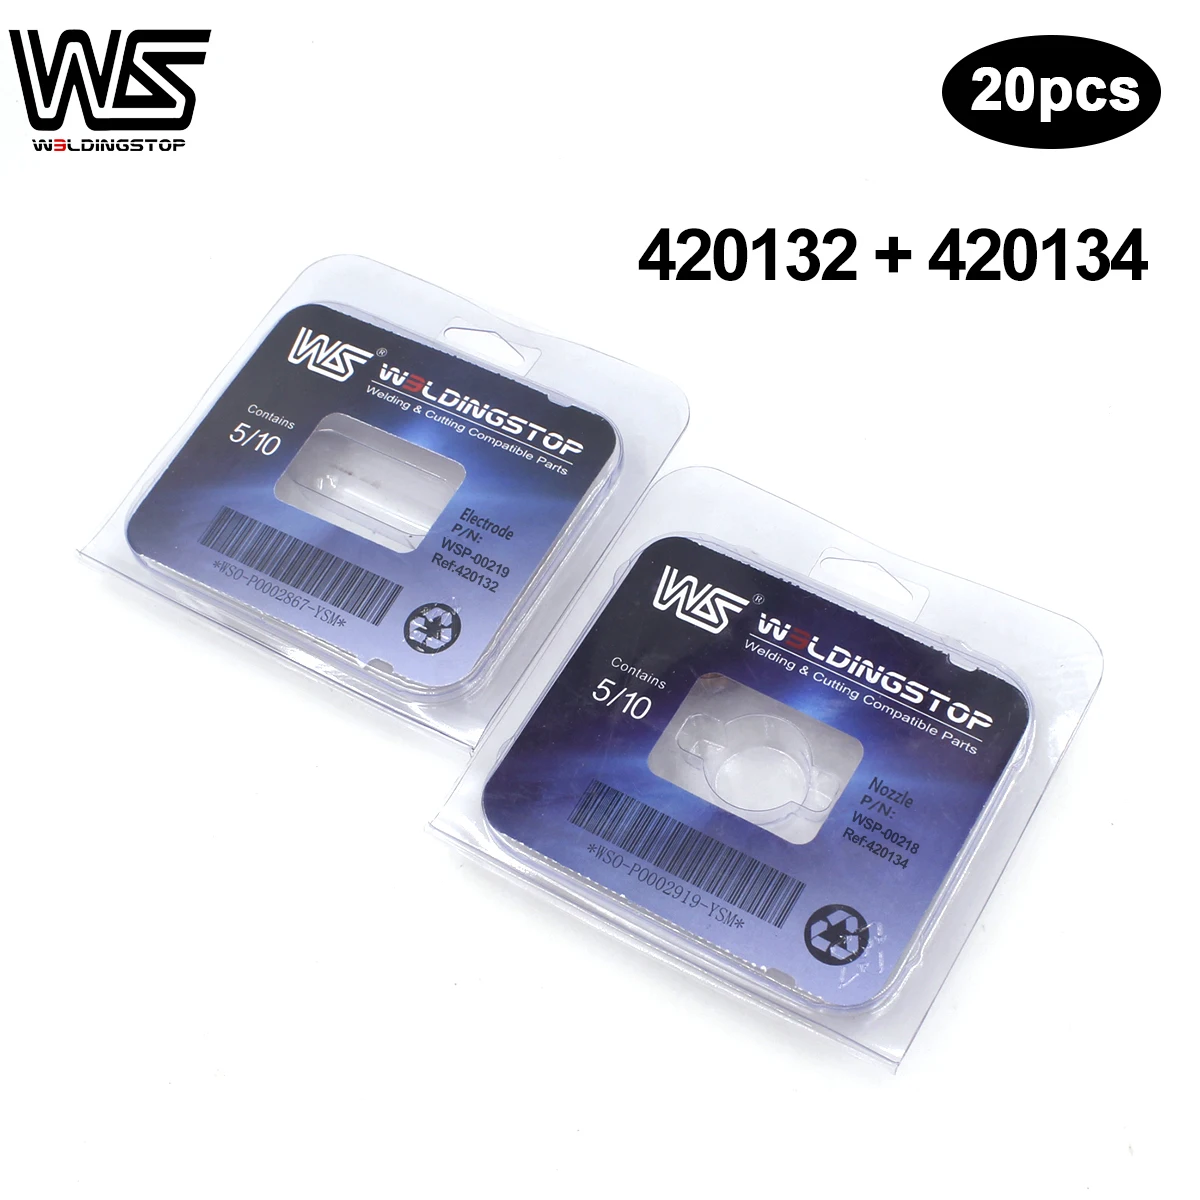 WS 420134 + 420132 AR T30 Bico Dicas + kits de substituição de Consumíveis de corte Plasma Eletrodos Pwmx 30 10 + 10 pcs/lot